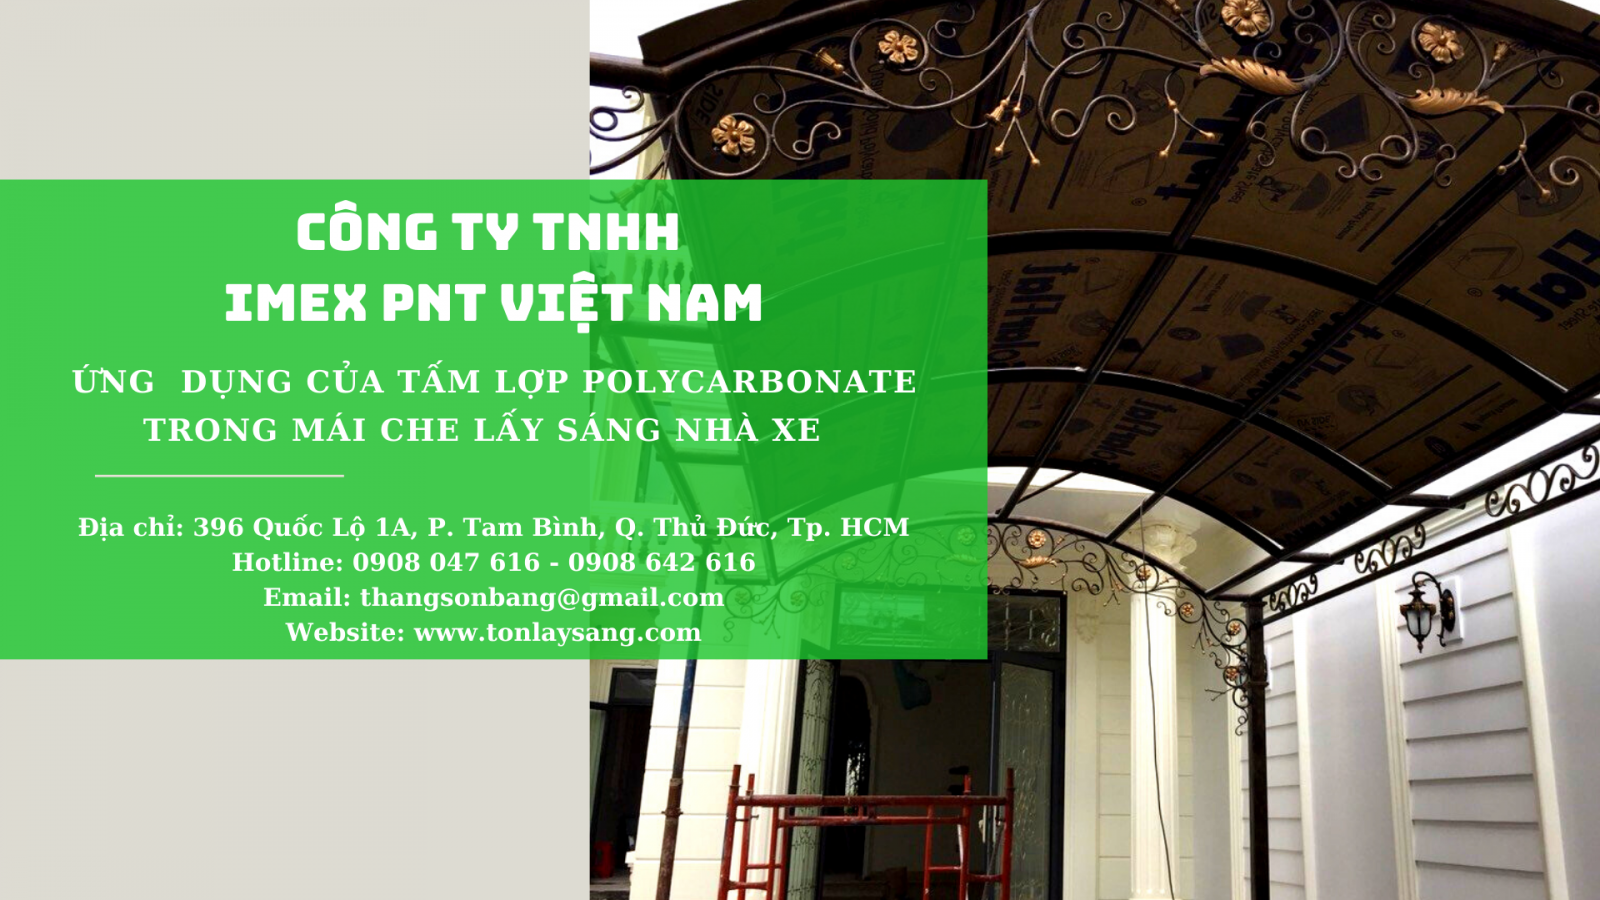 Imex PNT Việt Nam sở hữu đội ngũ giỏi và tâm huyết